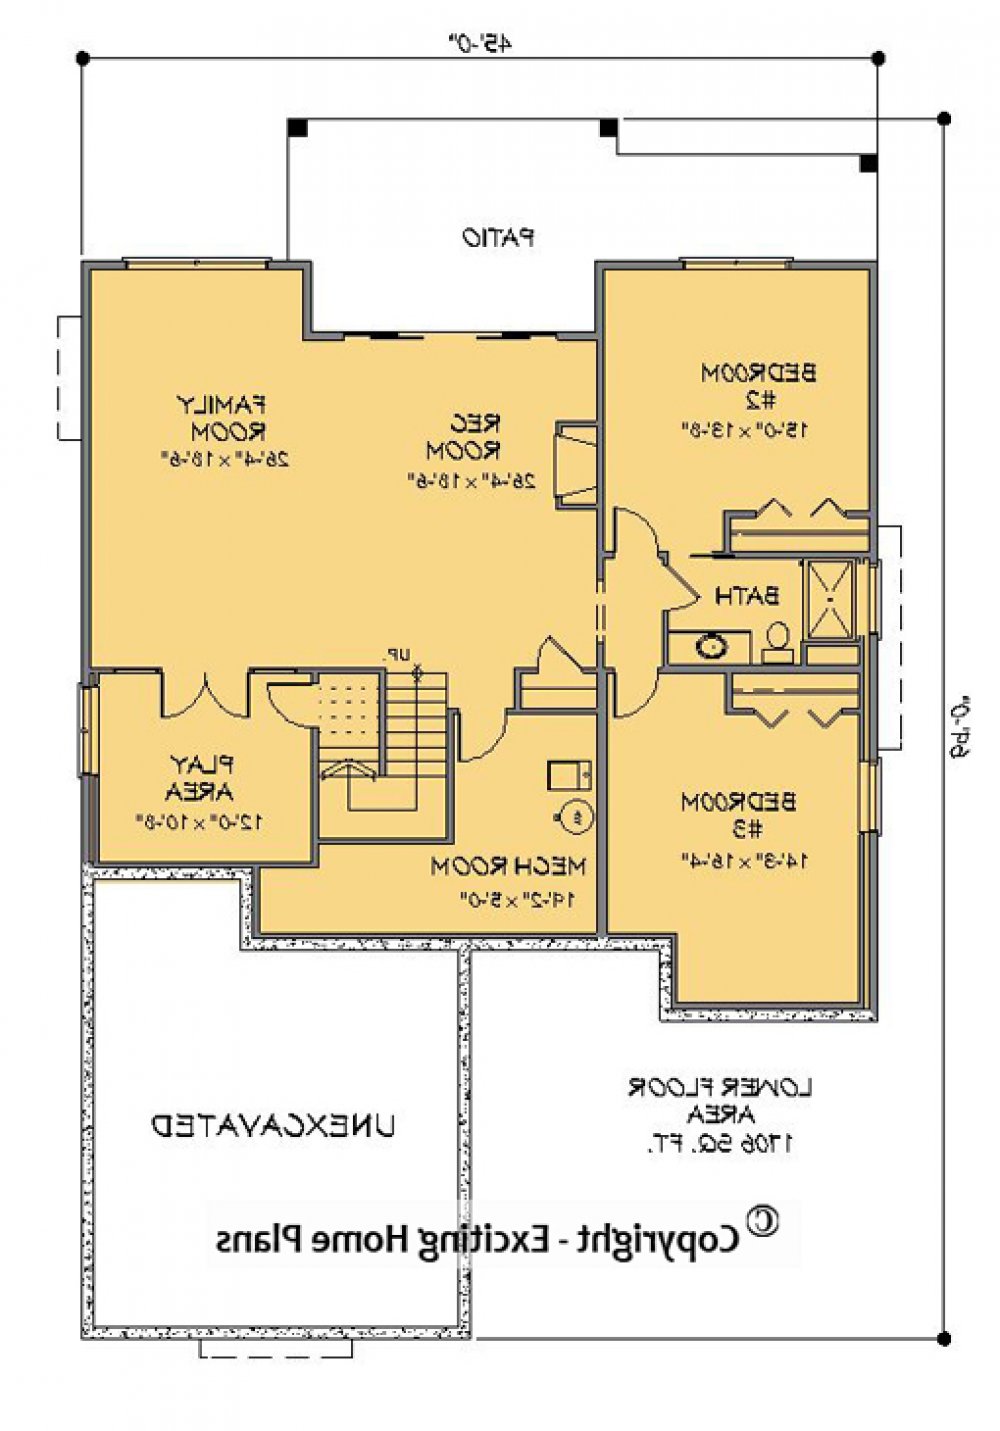 House Plan E1143-10 Lower Floor Plan REVERSE